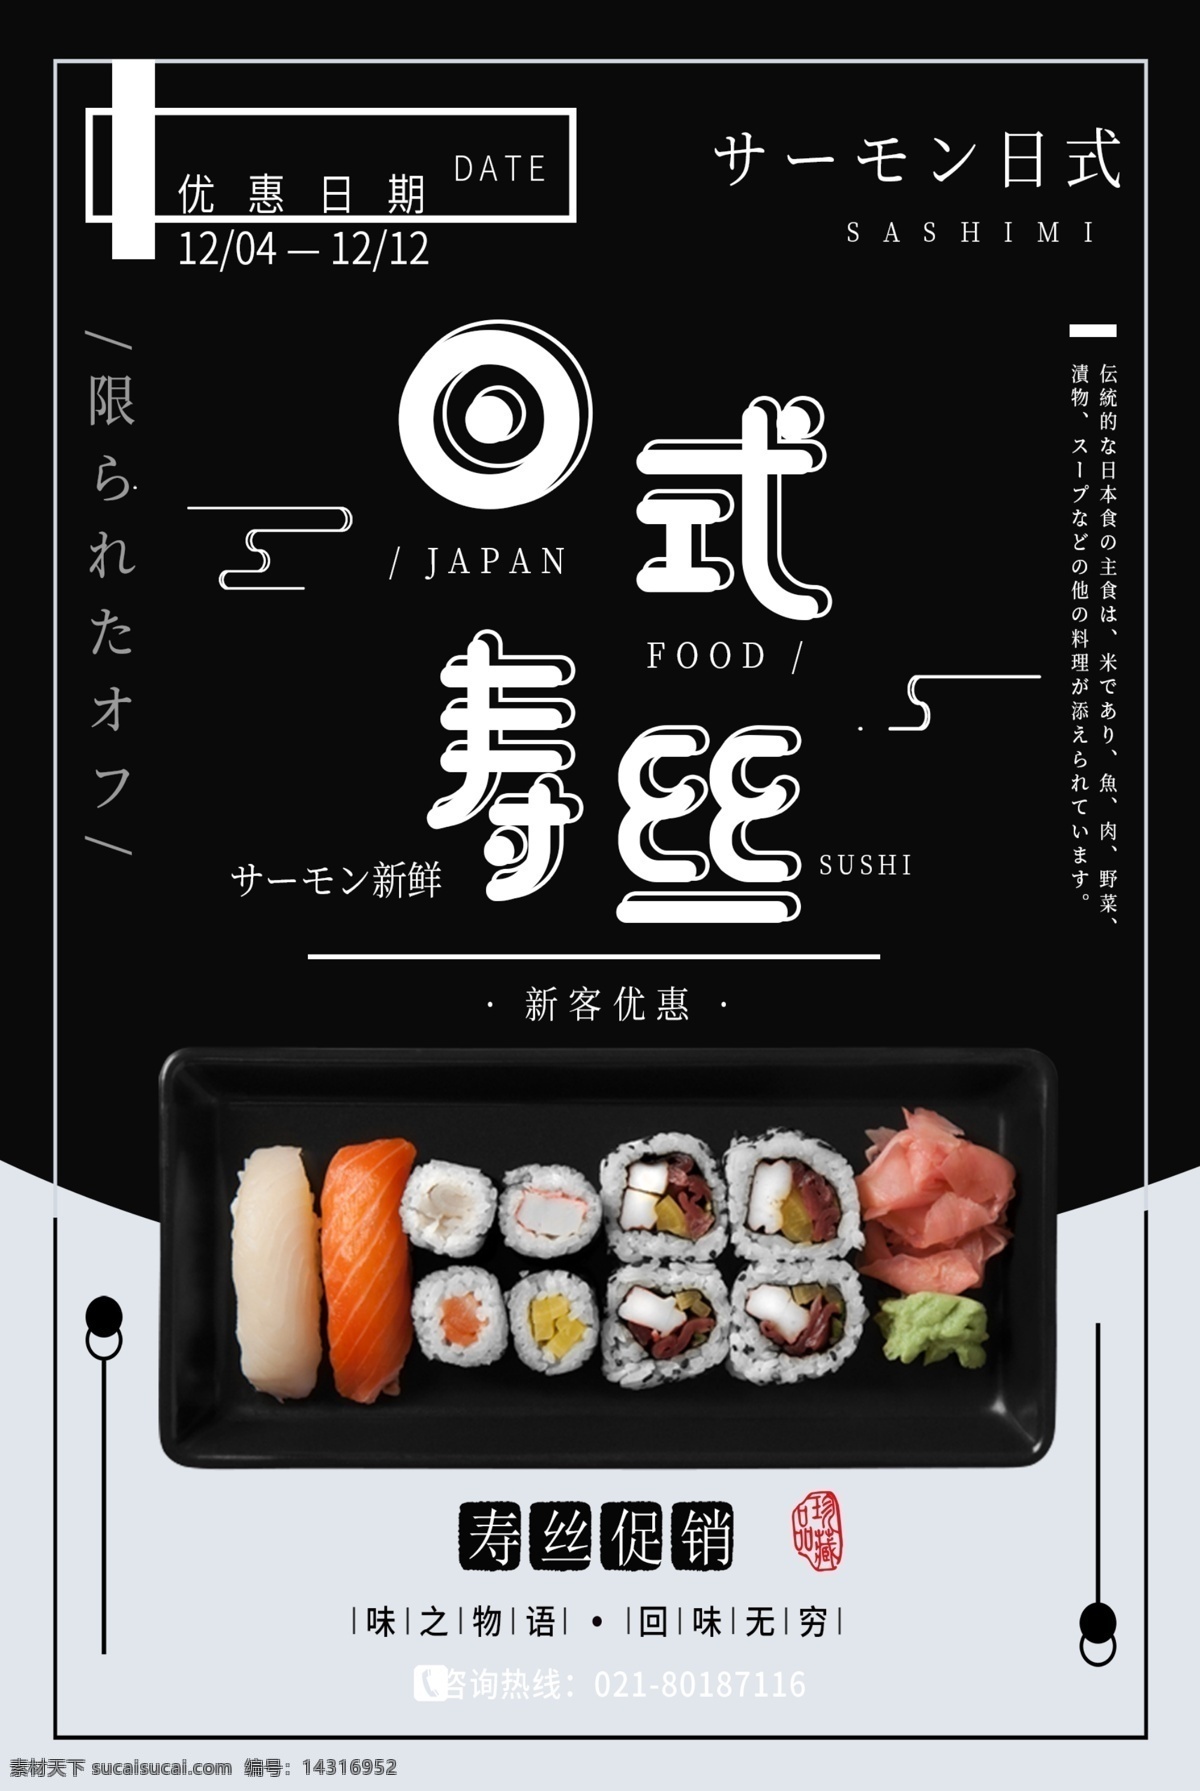 日式 寿司 促销 海报 刺身 日系 食物 日式寿司 美食 日料 美食促销